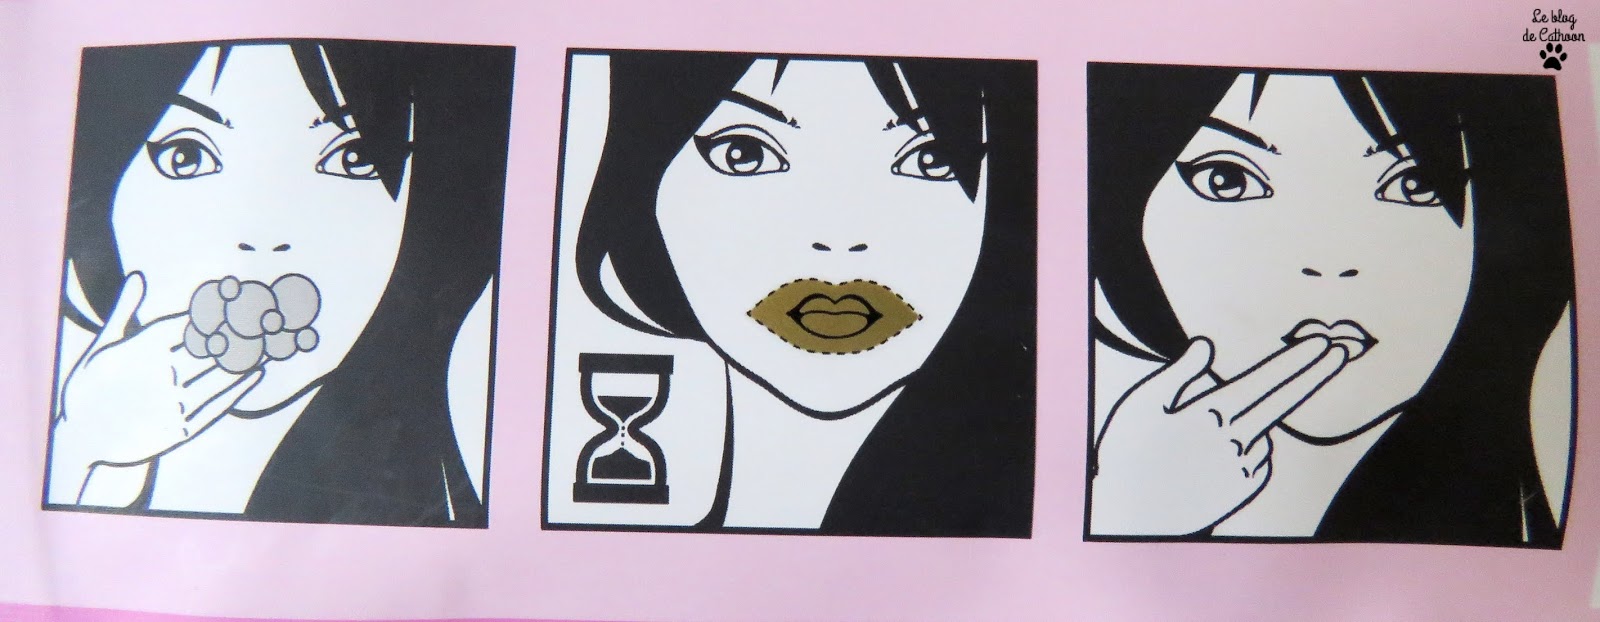 Gold Lip Mask - Masque Lèvres Doré - Action